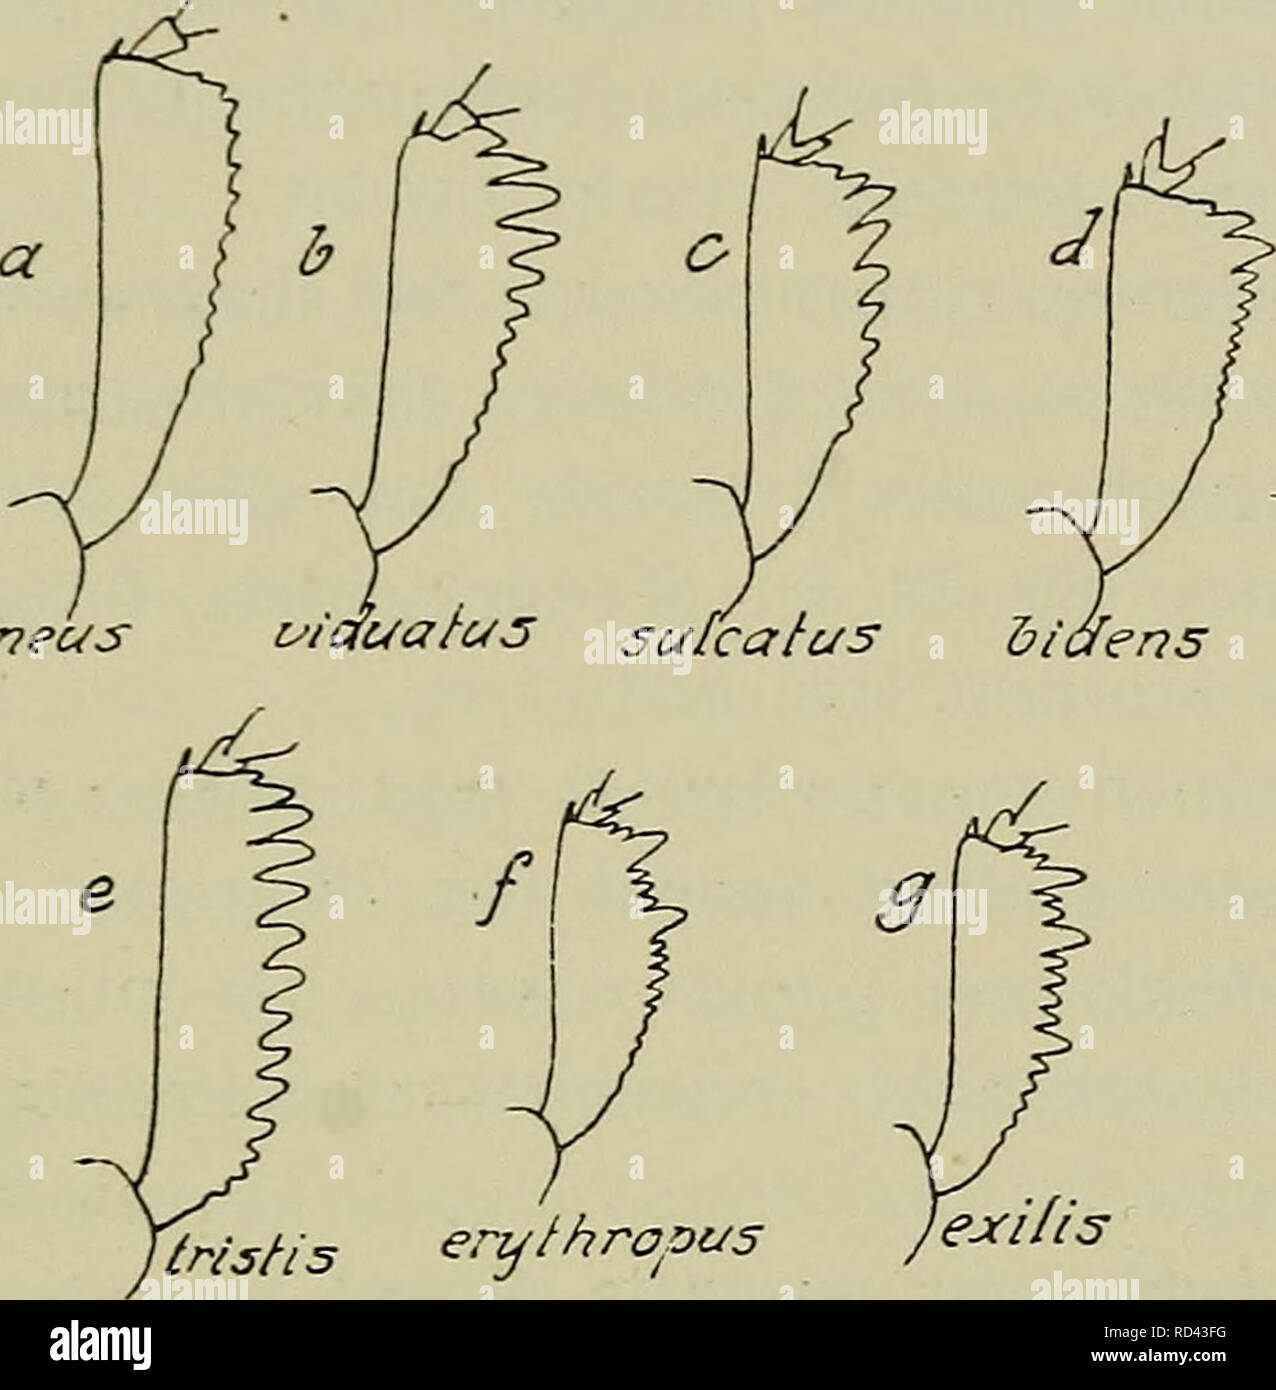 . Danmarks fauna; illustrerede haandbøger su den danske dyreverden... 91 Forskinnebeiienes yderside ikke kraftigt tandet i su den dimezzare laengde eller med 2 eller 3 af mindre taender adskilte laengere taender (fig. 38, b-d. f og g) 7. YtrisNs en^fhrapas JeMlis Fig. 38. Højre forskinneben hos forskellige Meligethes-arter, Forskinnebenenes yderside med 2 eller 3 af mindre taender adskilte, laengere og kraftigere taender (fig. 38, f og g). Pronotum ikke bredest ved roden, siderne rundede også bagtil, omend meget svagt. Vingedaekkerne fint chagrinerede eller tvaerrid- sede. Laengde 1,4-2,4 mm 9. gruppe Foto Stock